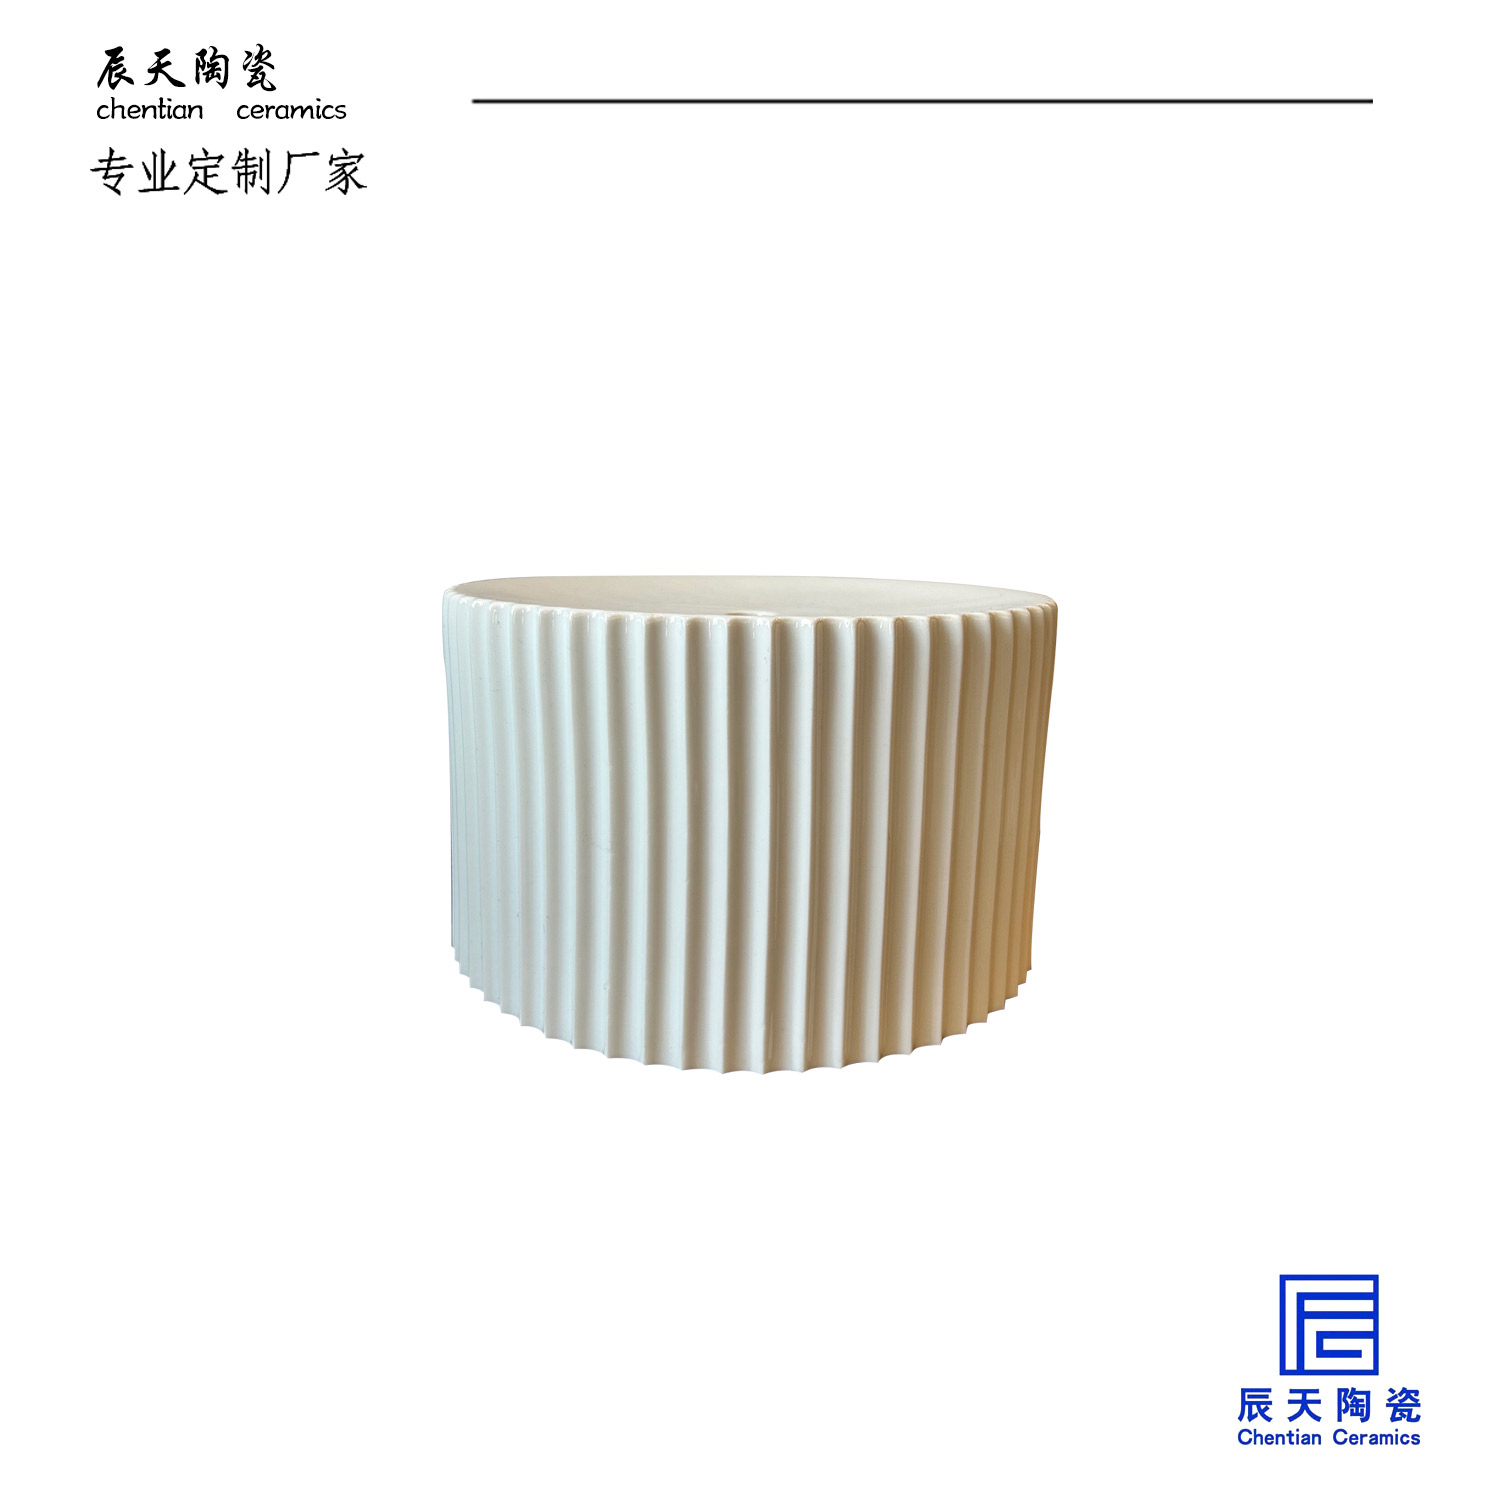 <b>廣州岑豪商貿定制陶瓷燈罩案例</b>